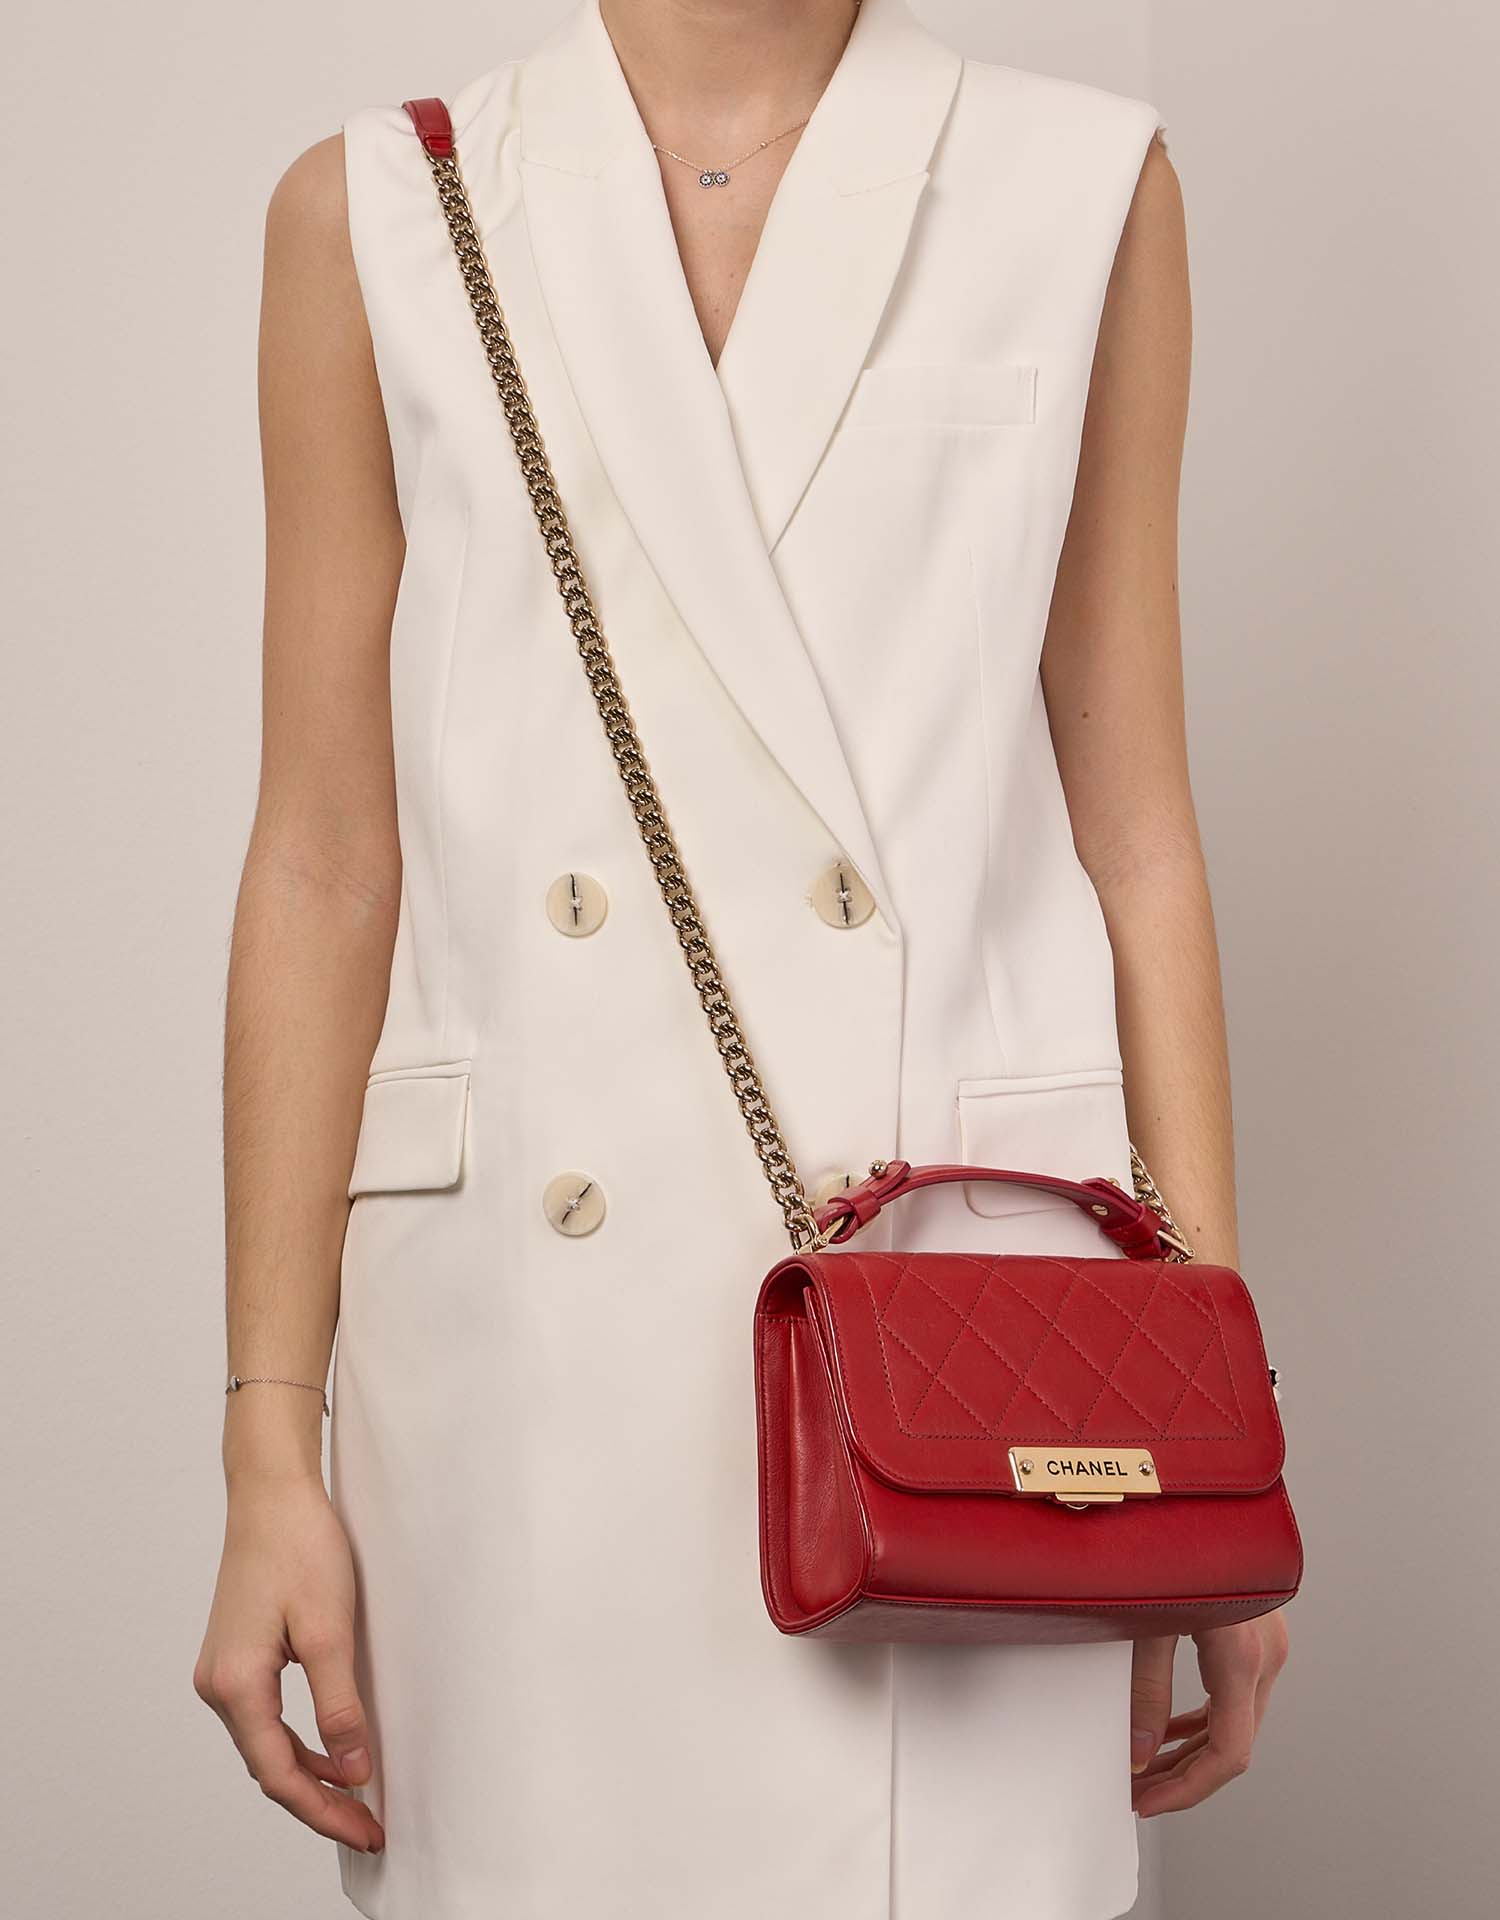 Chanel FlapBagHandle Red Sizes Worn | Verkaufen Sie Ihre Designer-Tasche auf Saclab.com